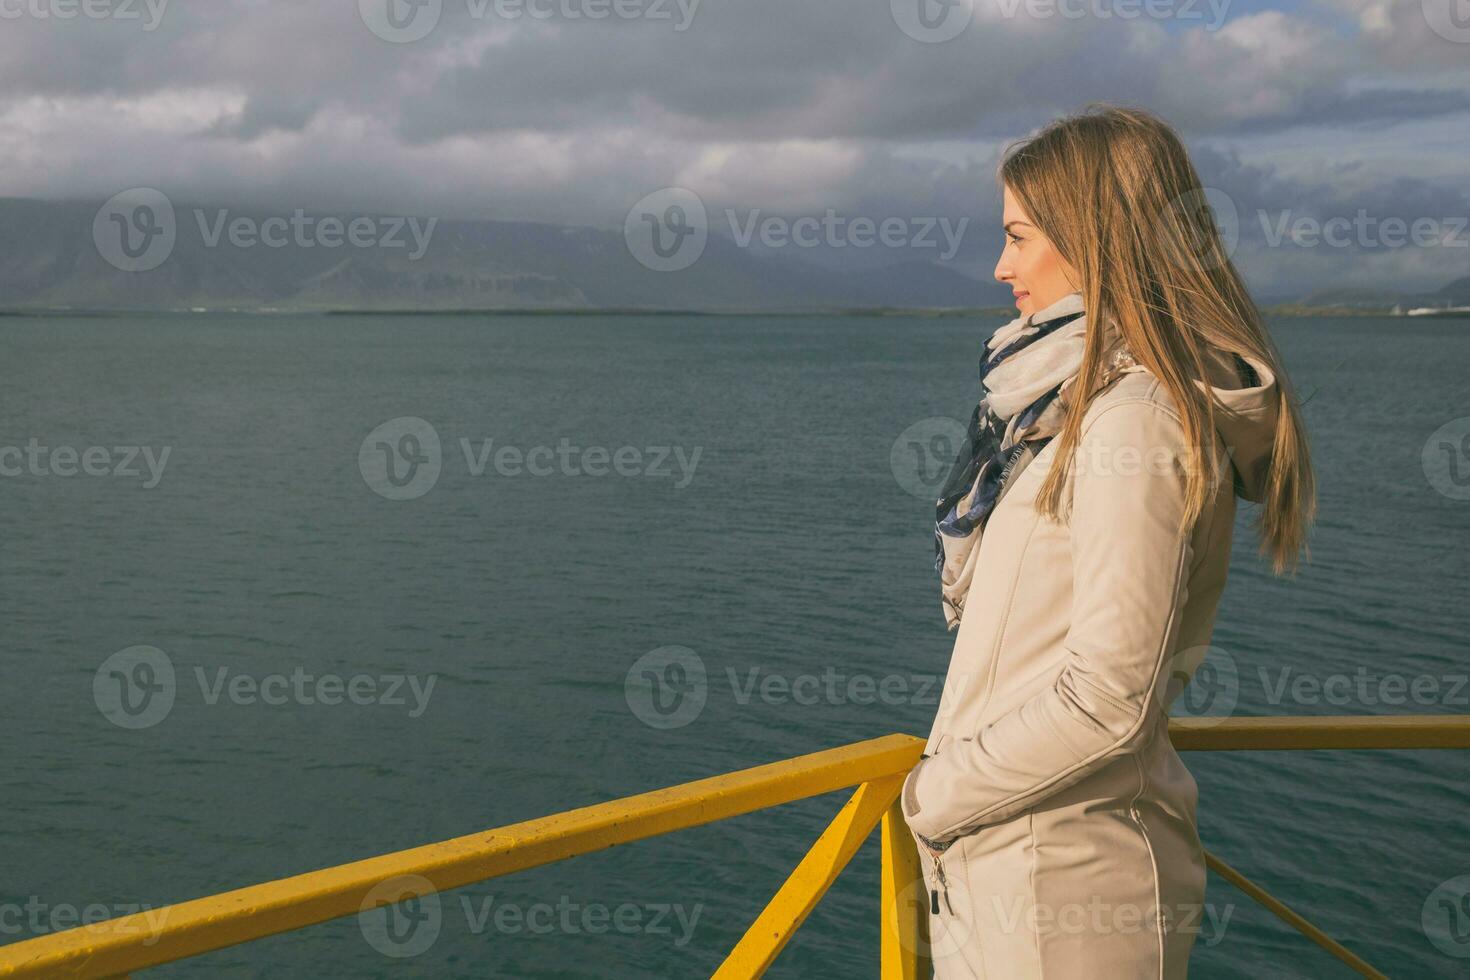 schön Frau Stehen beim das Hafen im Reykjavik und genießt suchen beim das meer.bild enthält wenig Lärm weil von hoch iso einstellen auf Kamera und es foto